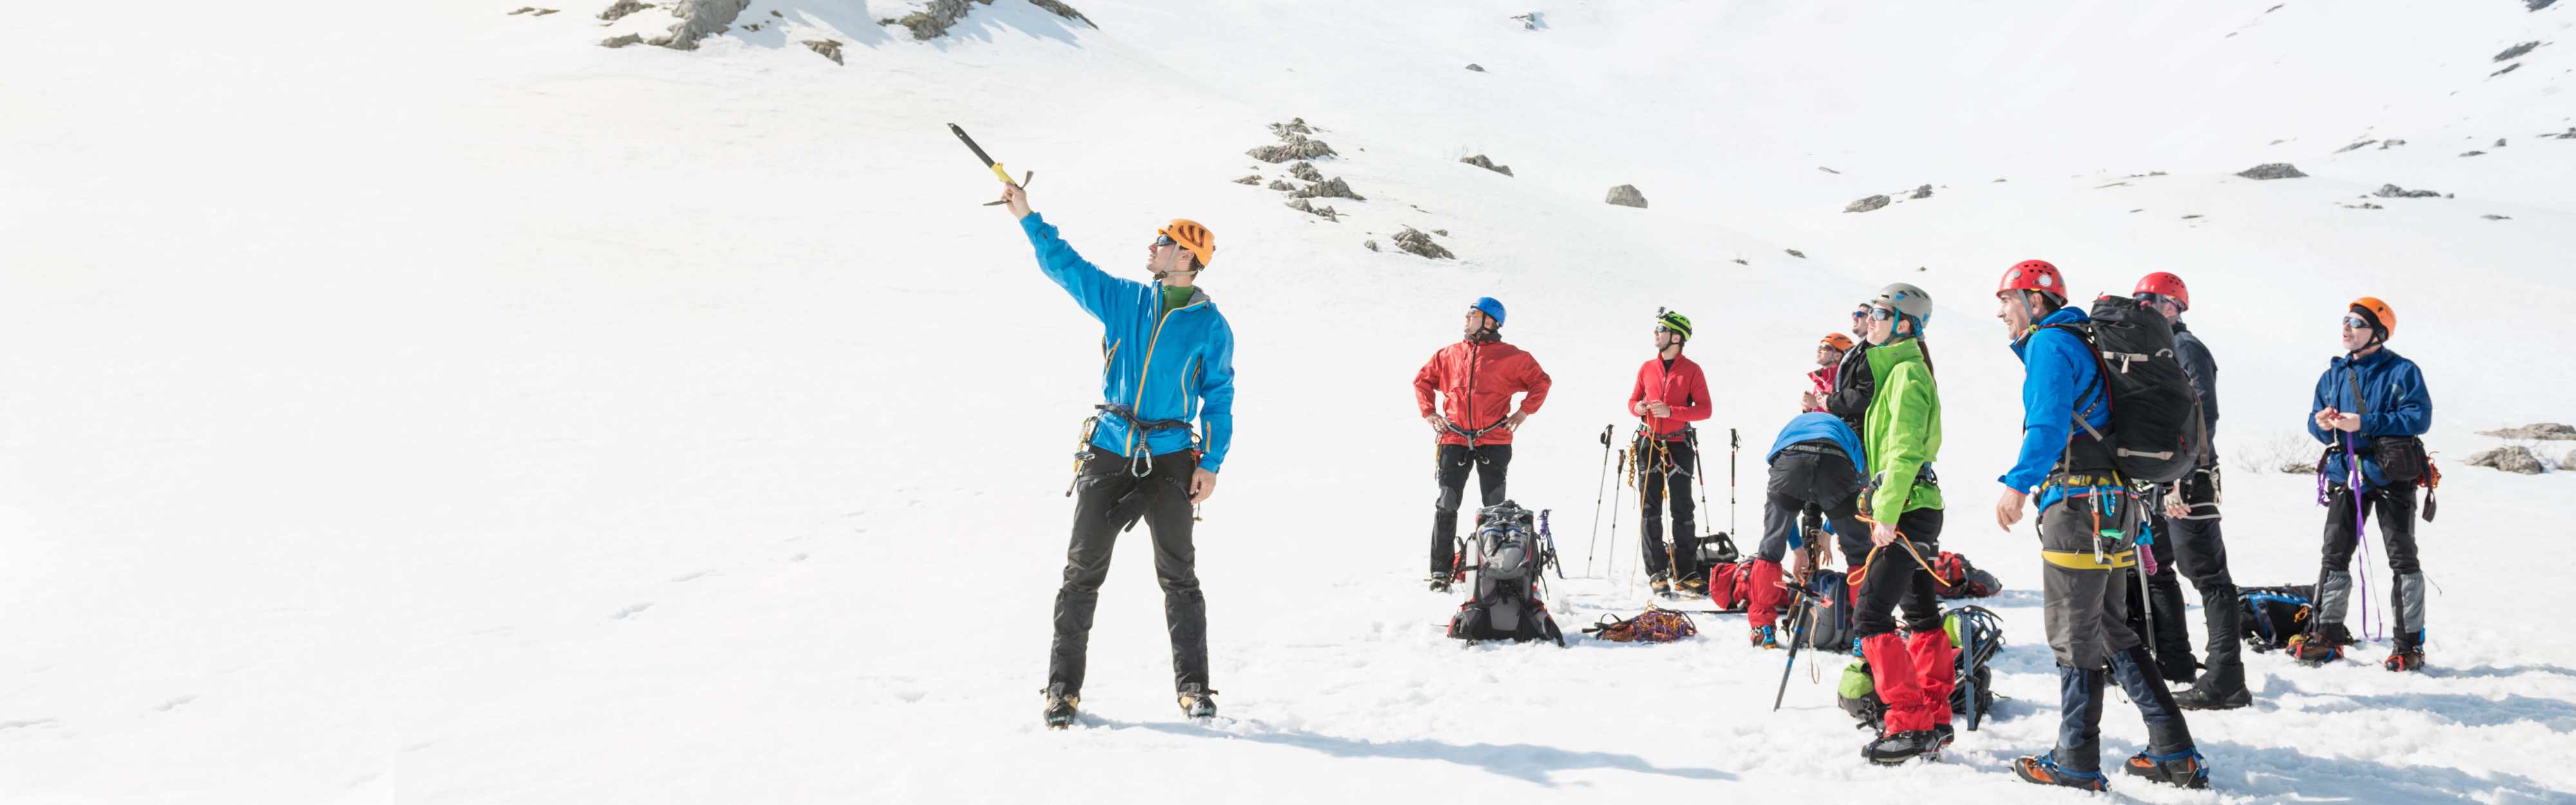 Team auf Expeditionstour in den Bergen